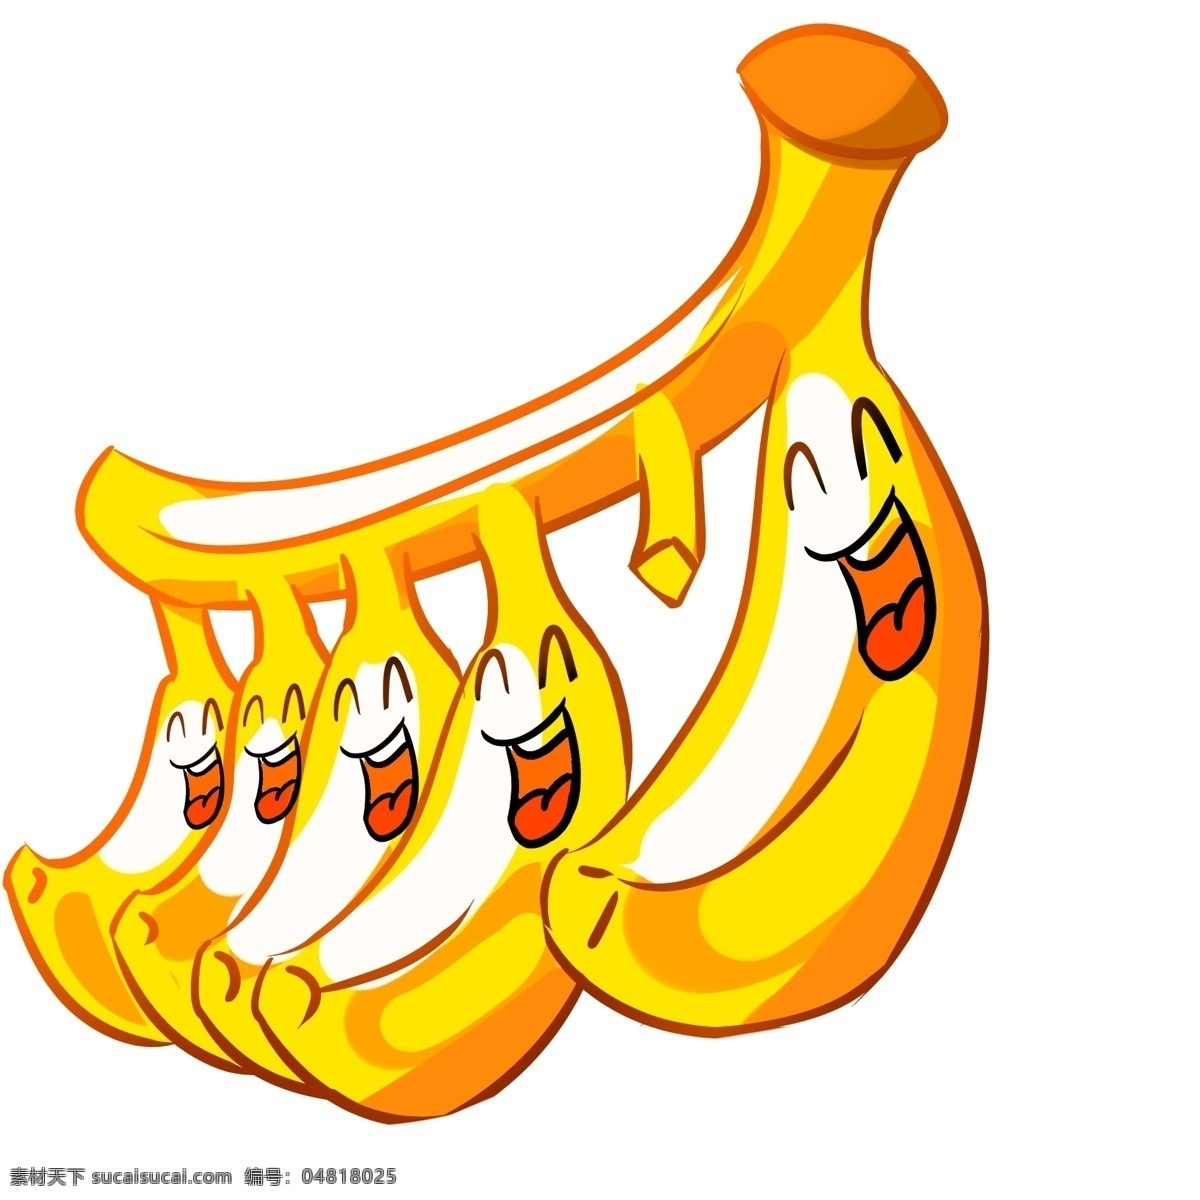 开心 笑脸 香蕉 插画 黄色的香蕉 卡通插画 笑脸插画 微笑插画 愉快插画 高兴插画 开心的香蕉